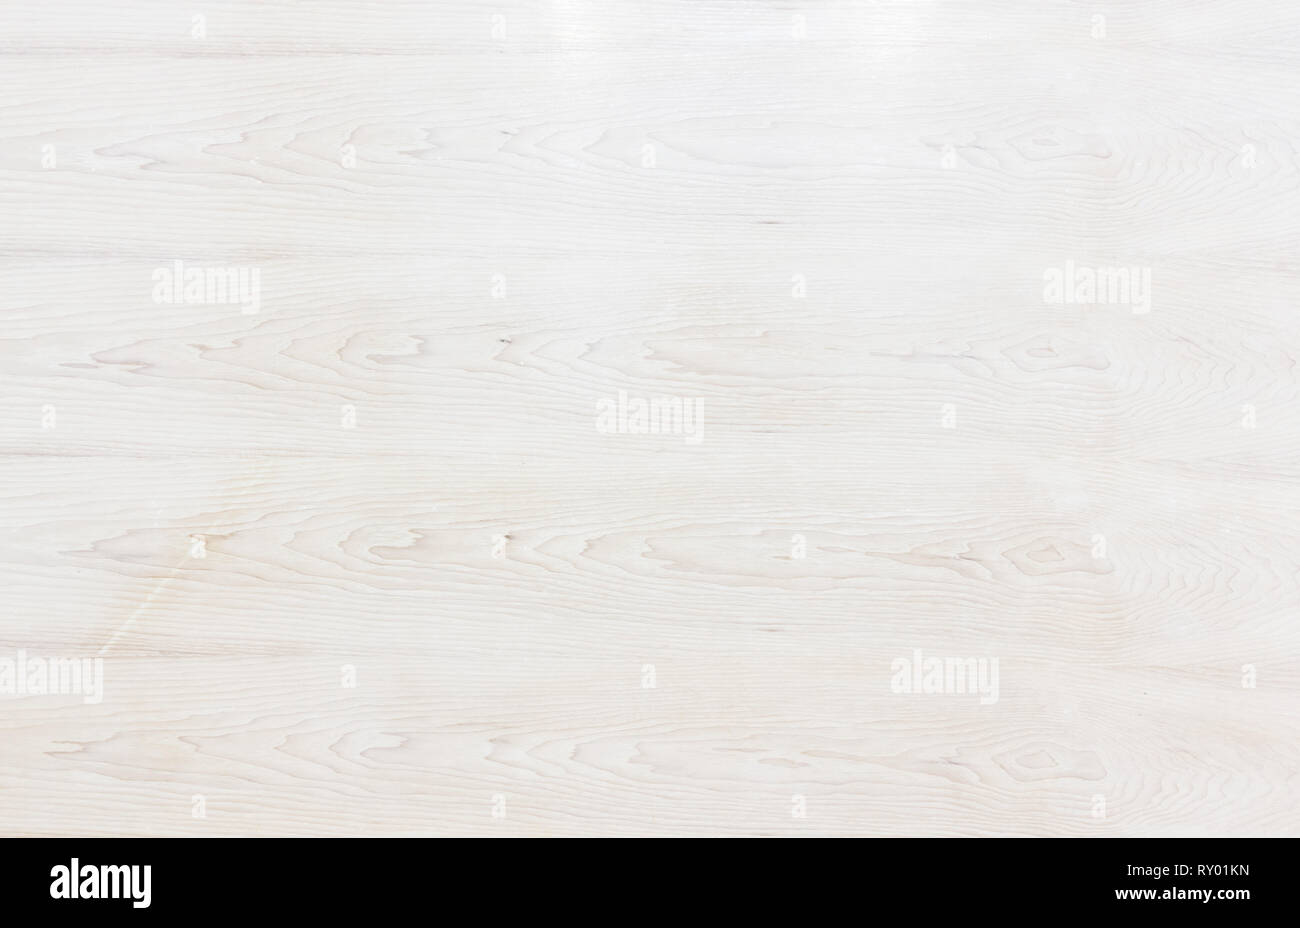 Tabelle Blick von oben auf die Holzstruktur in weißes Licht natürliche Farbe Hintergrund. Grau sauberes Korn Holzboden Birke-Kulisse, die mit normalem Board blass einze Stockfoto